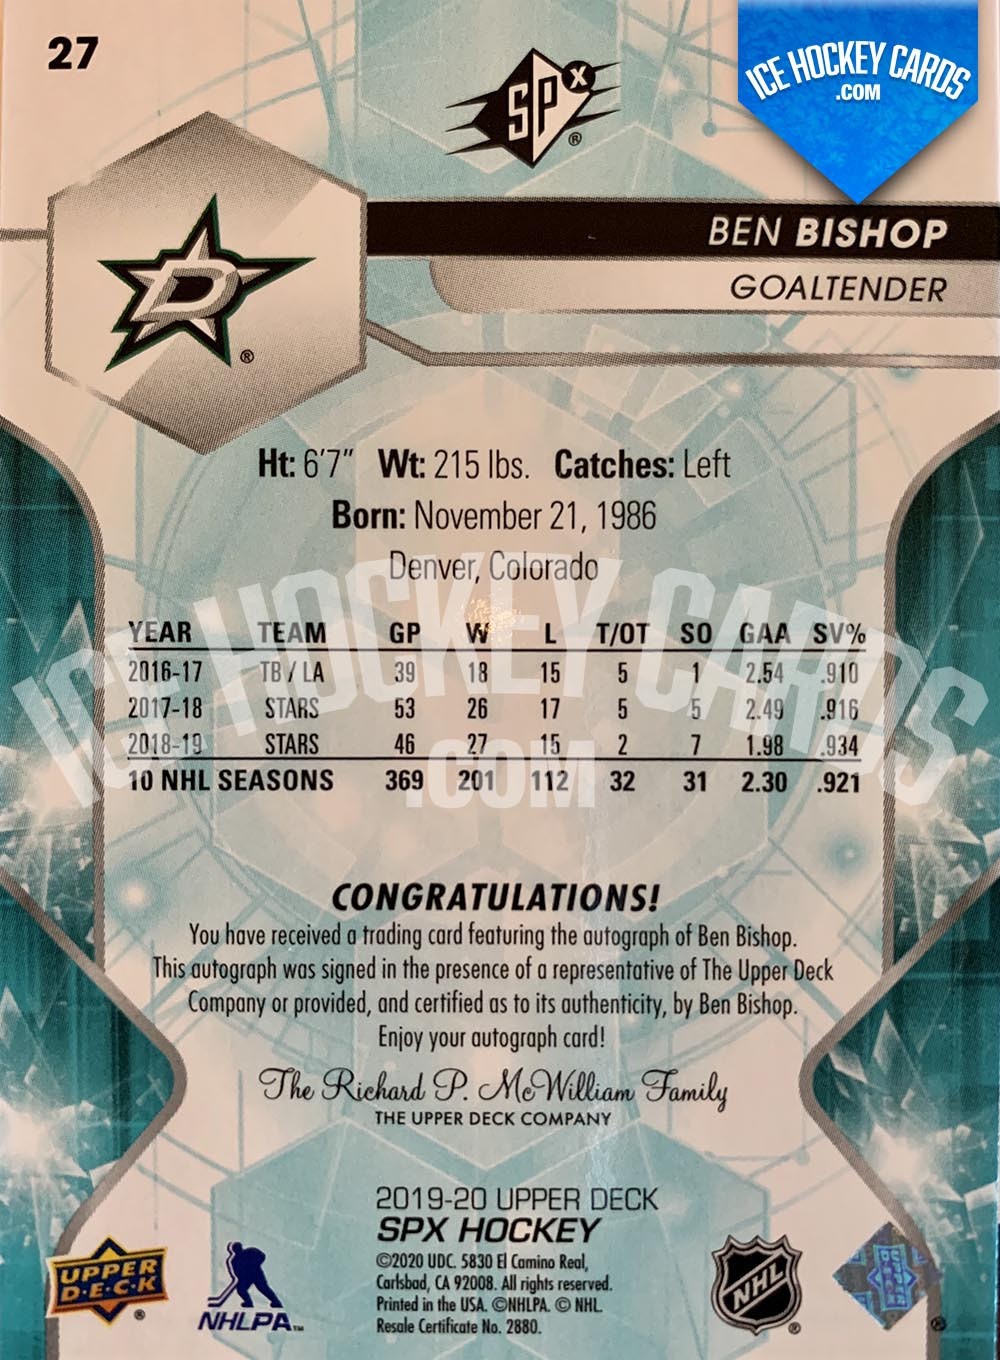 Upper Deck - SPx 2019-20 - Ben Bishop Autographed Base Card back